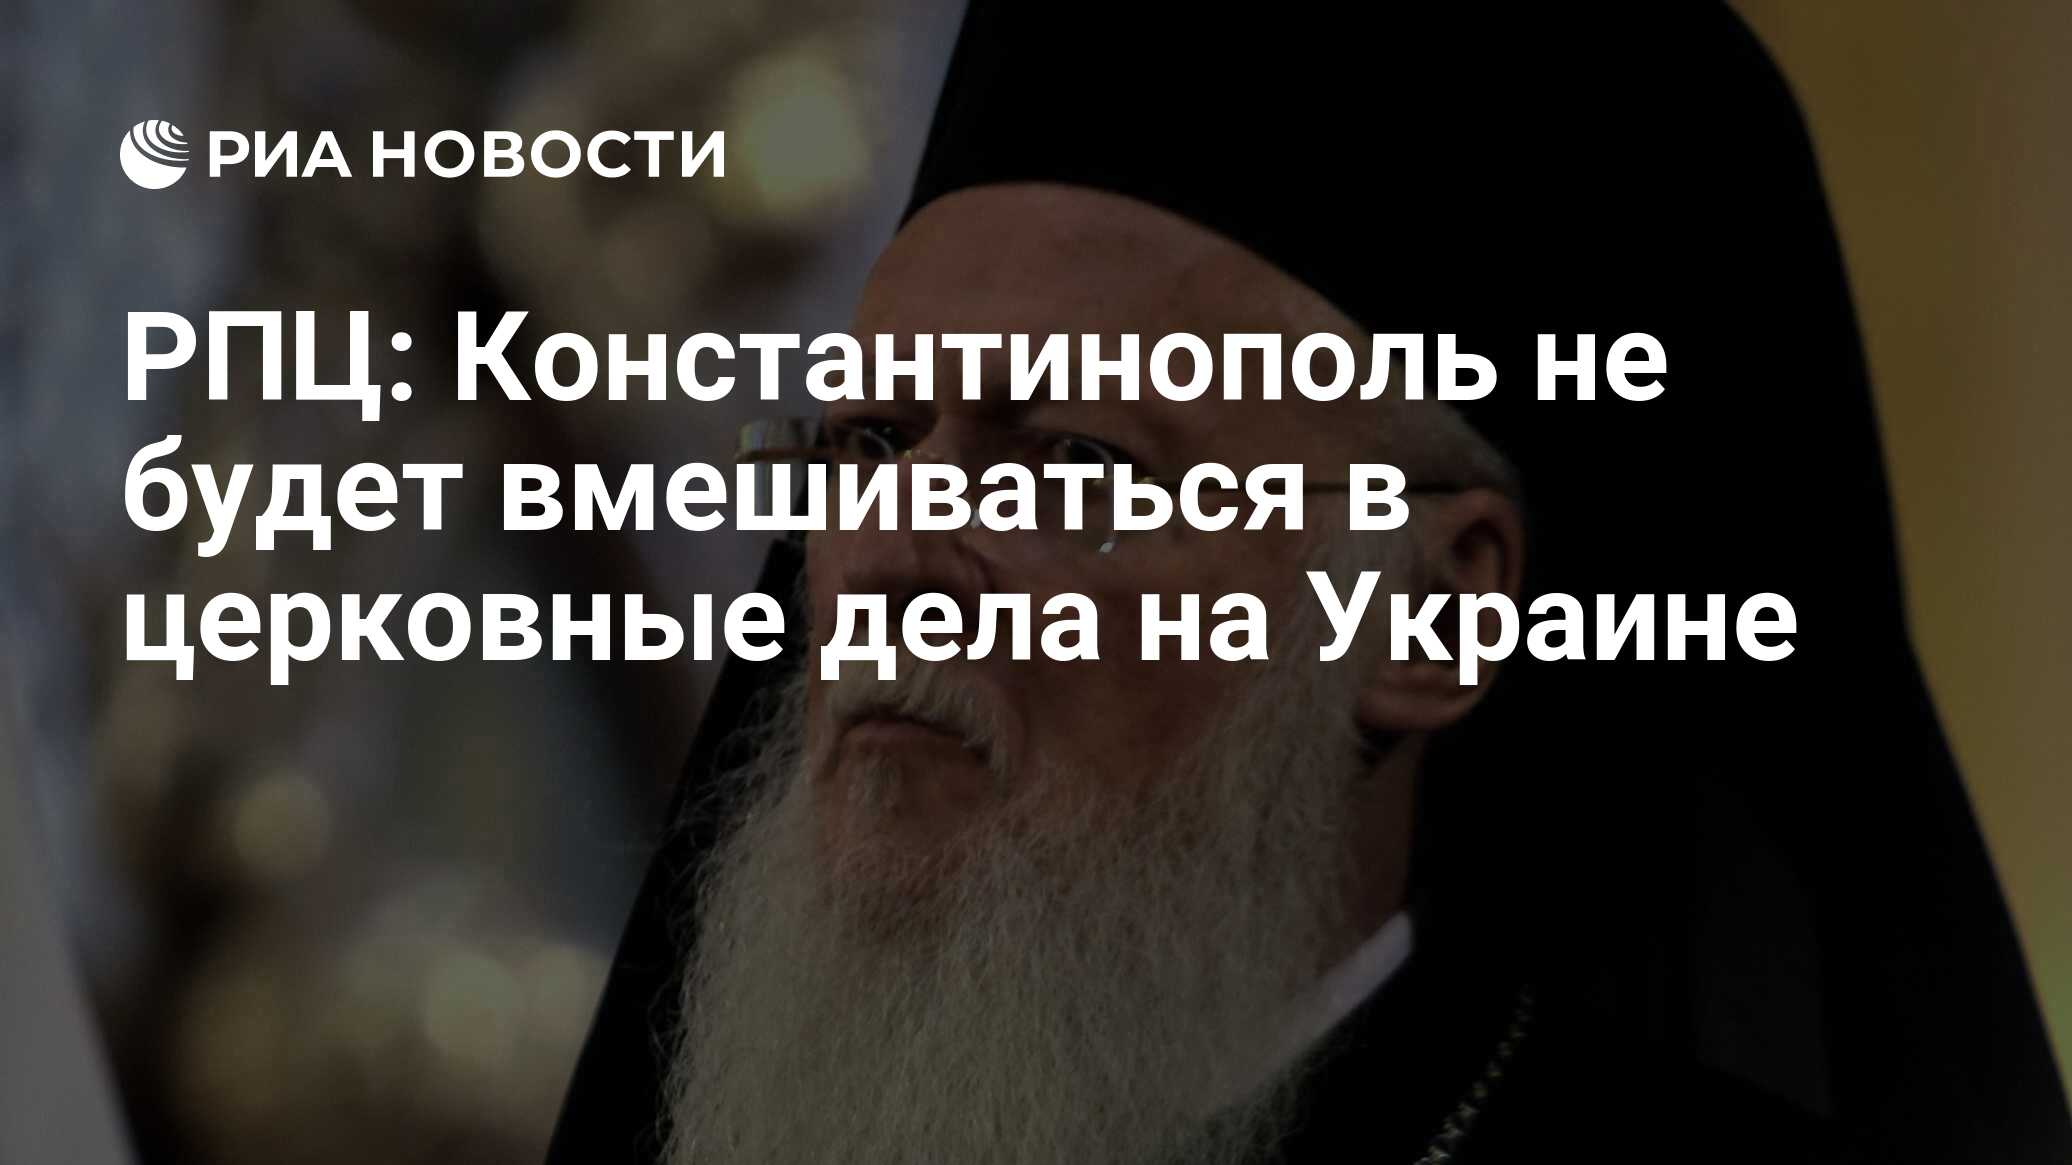 Обособление русской православной церкви от константинопольской